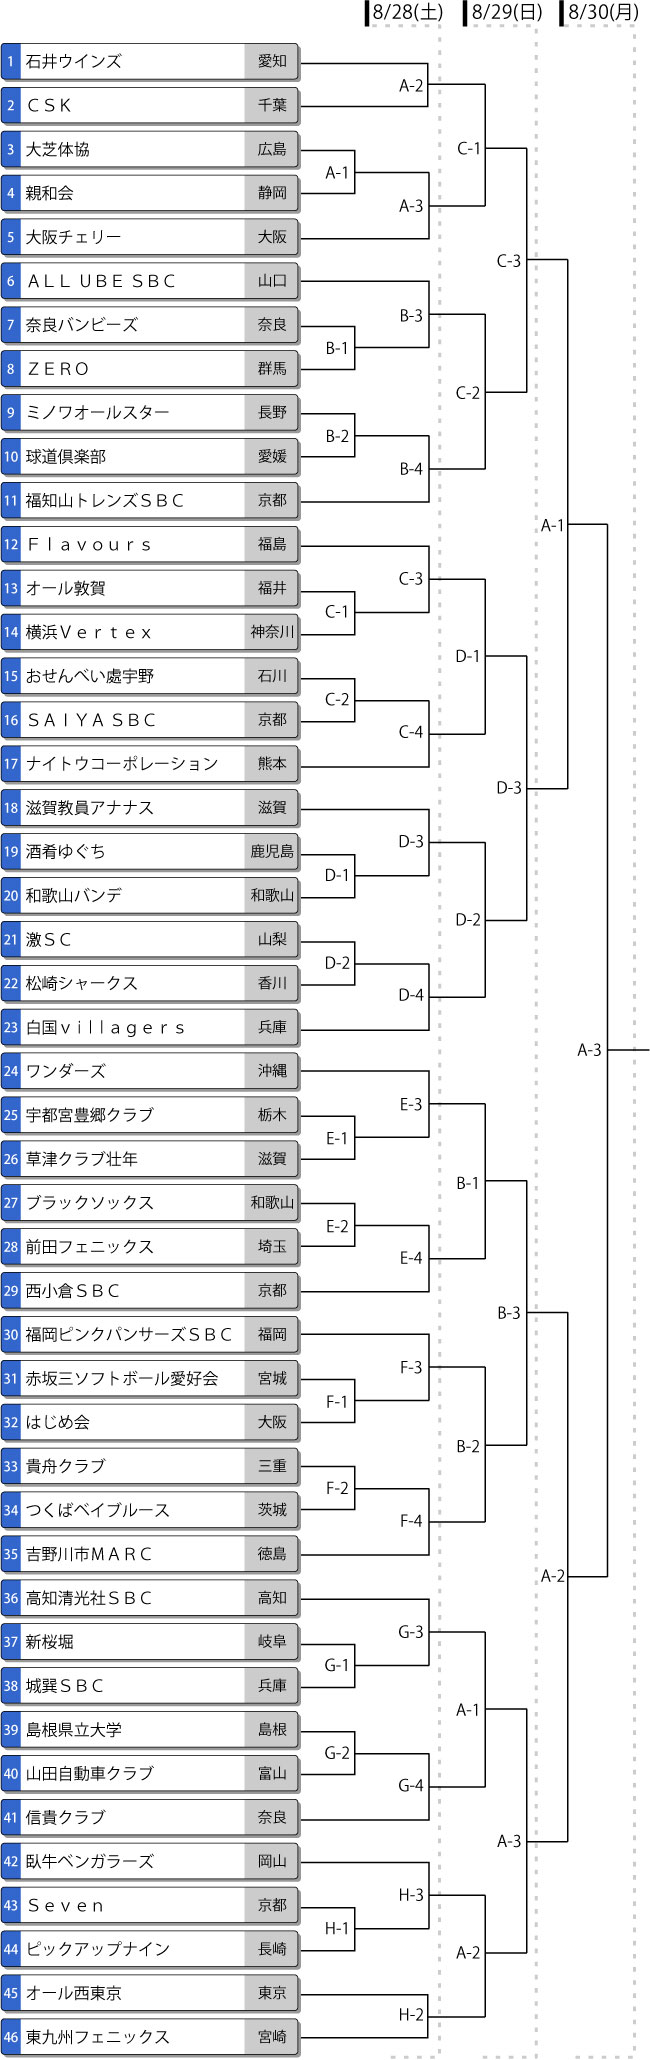 第18回 全日本一般男子トーナメント表